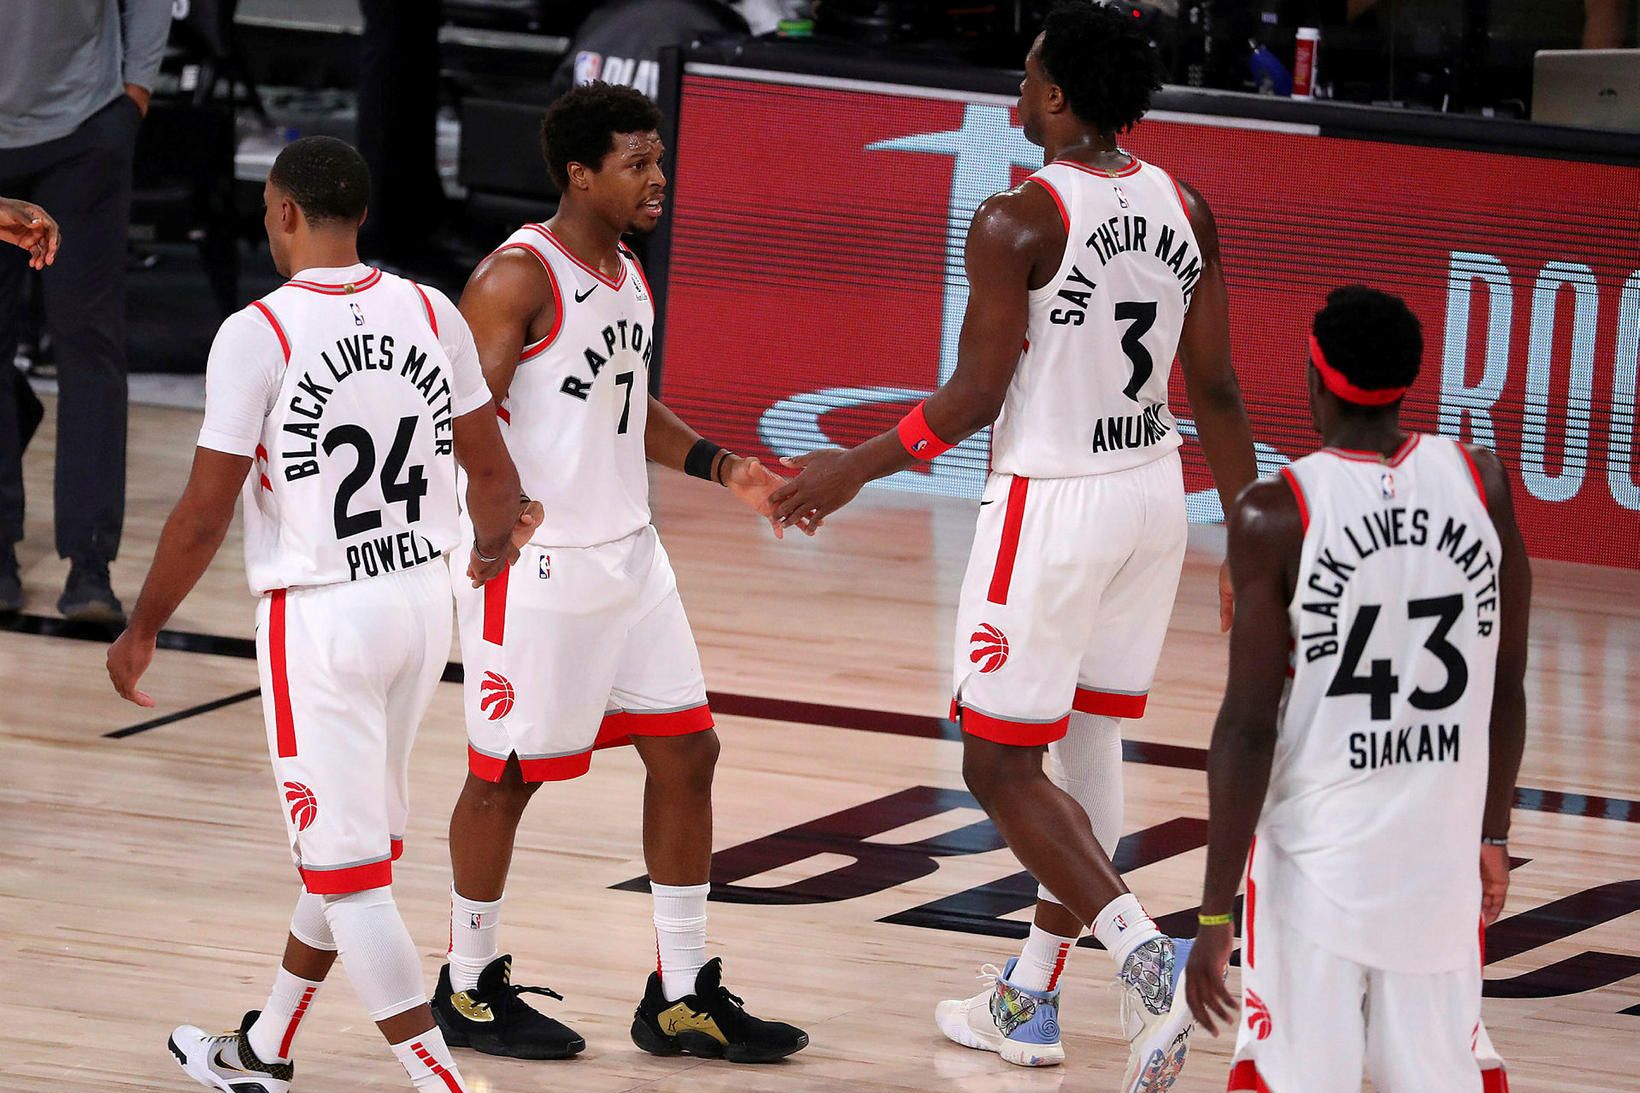 Meistarar Toronto Raptors ganga af velli í nótt.